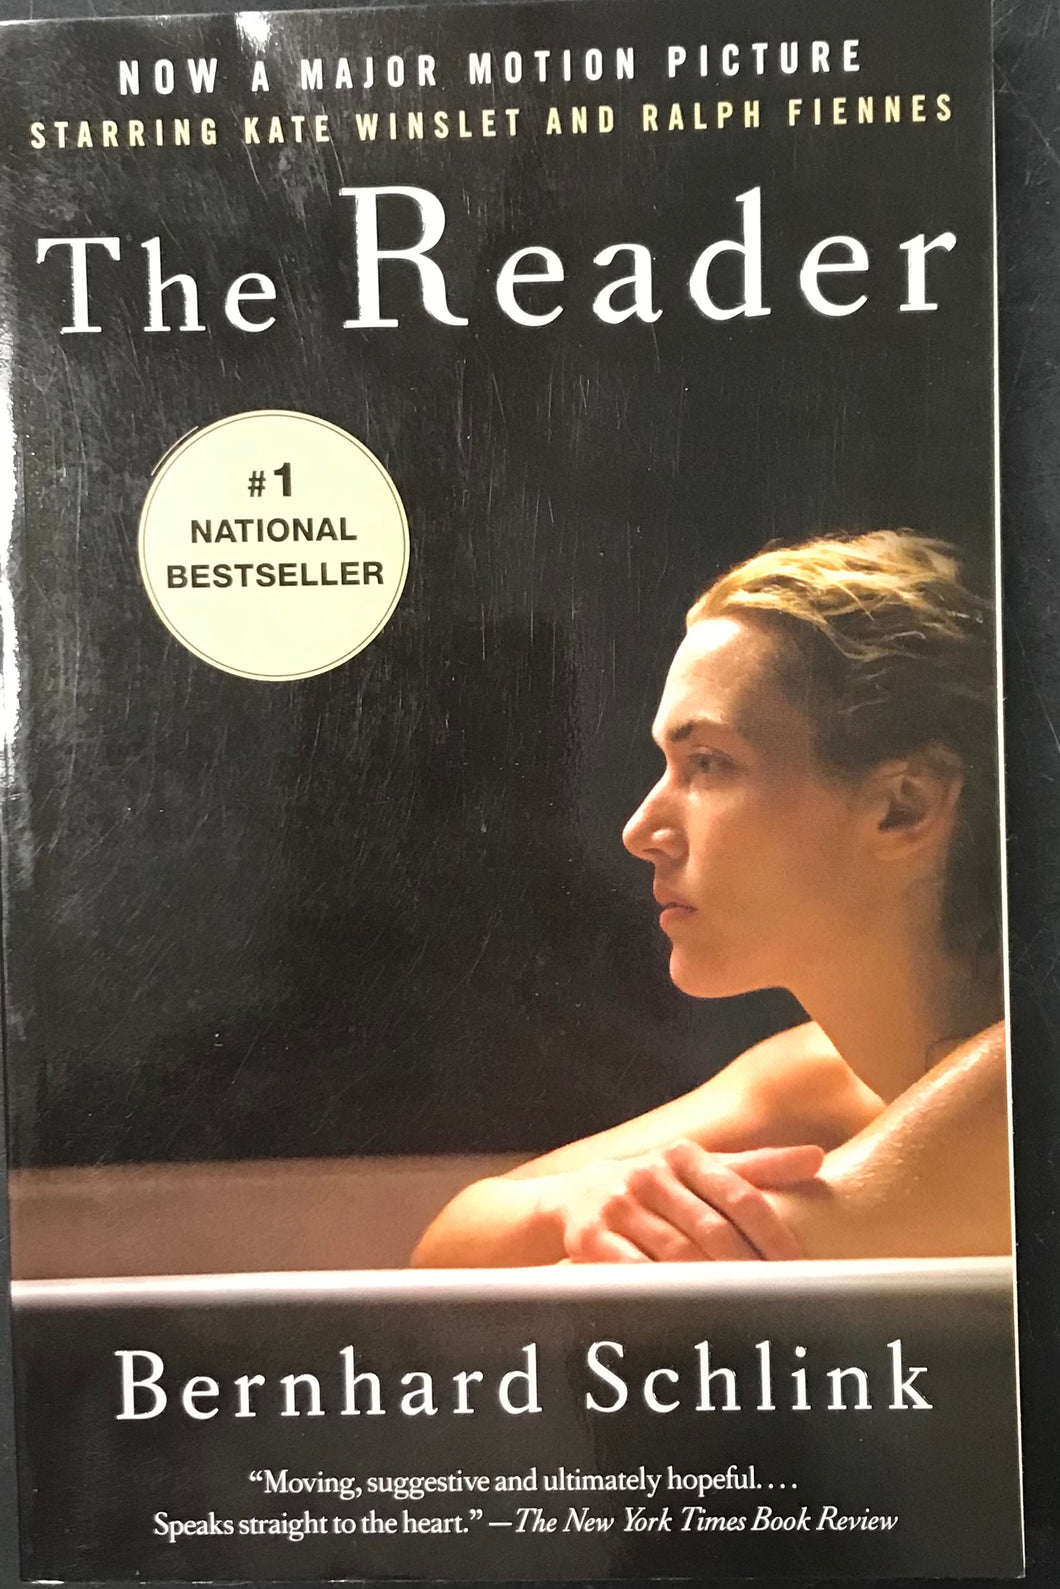 The Reader, Bernhard Schlink